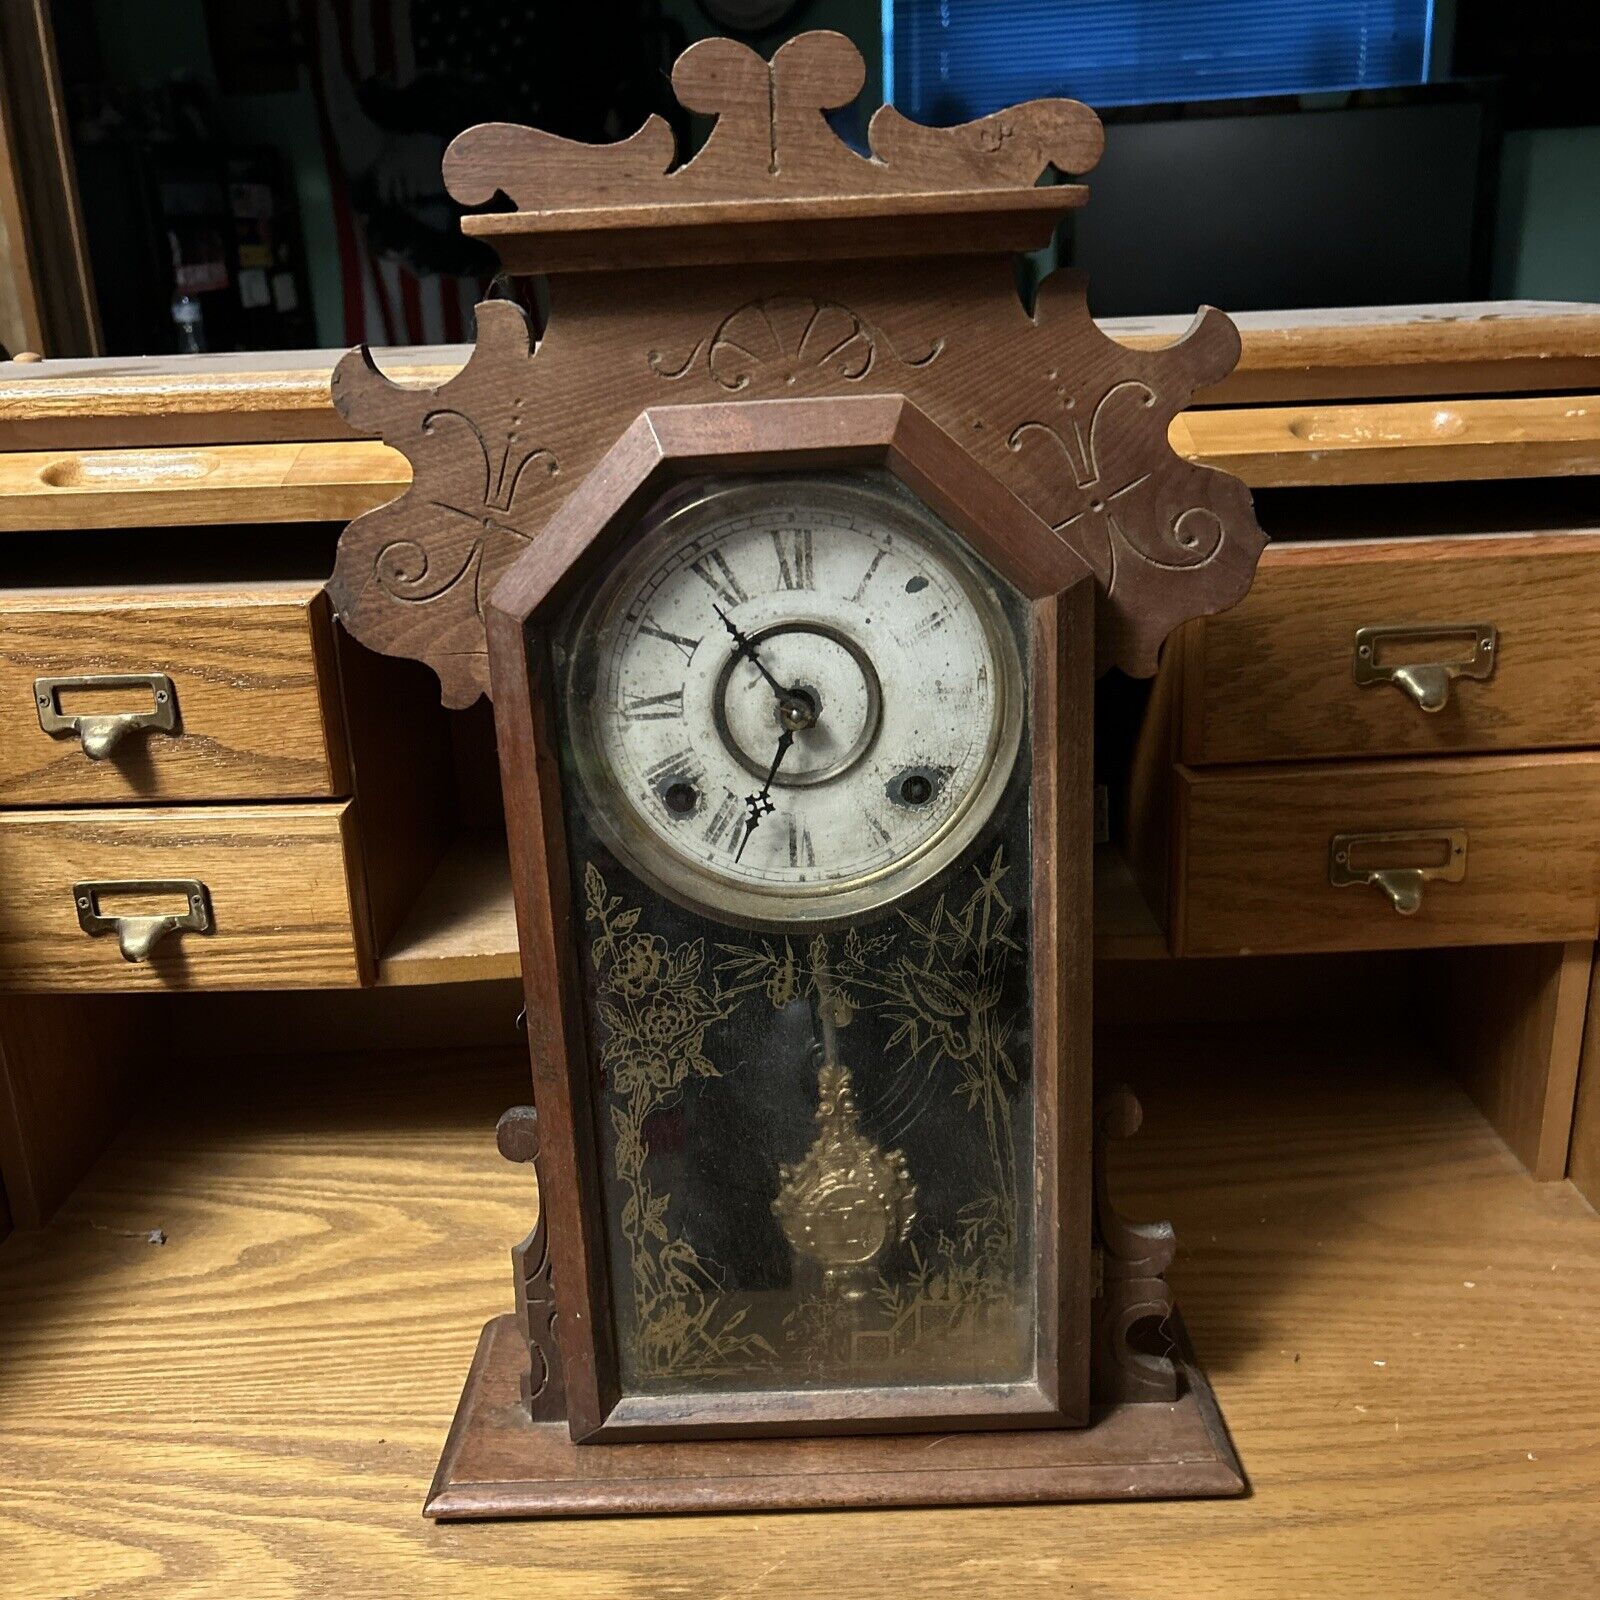 Wooden Mantle Clock - Ingraham/Seth Thomas?